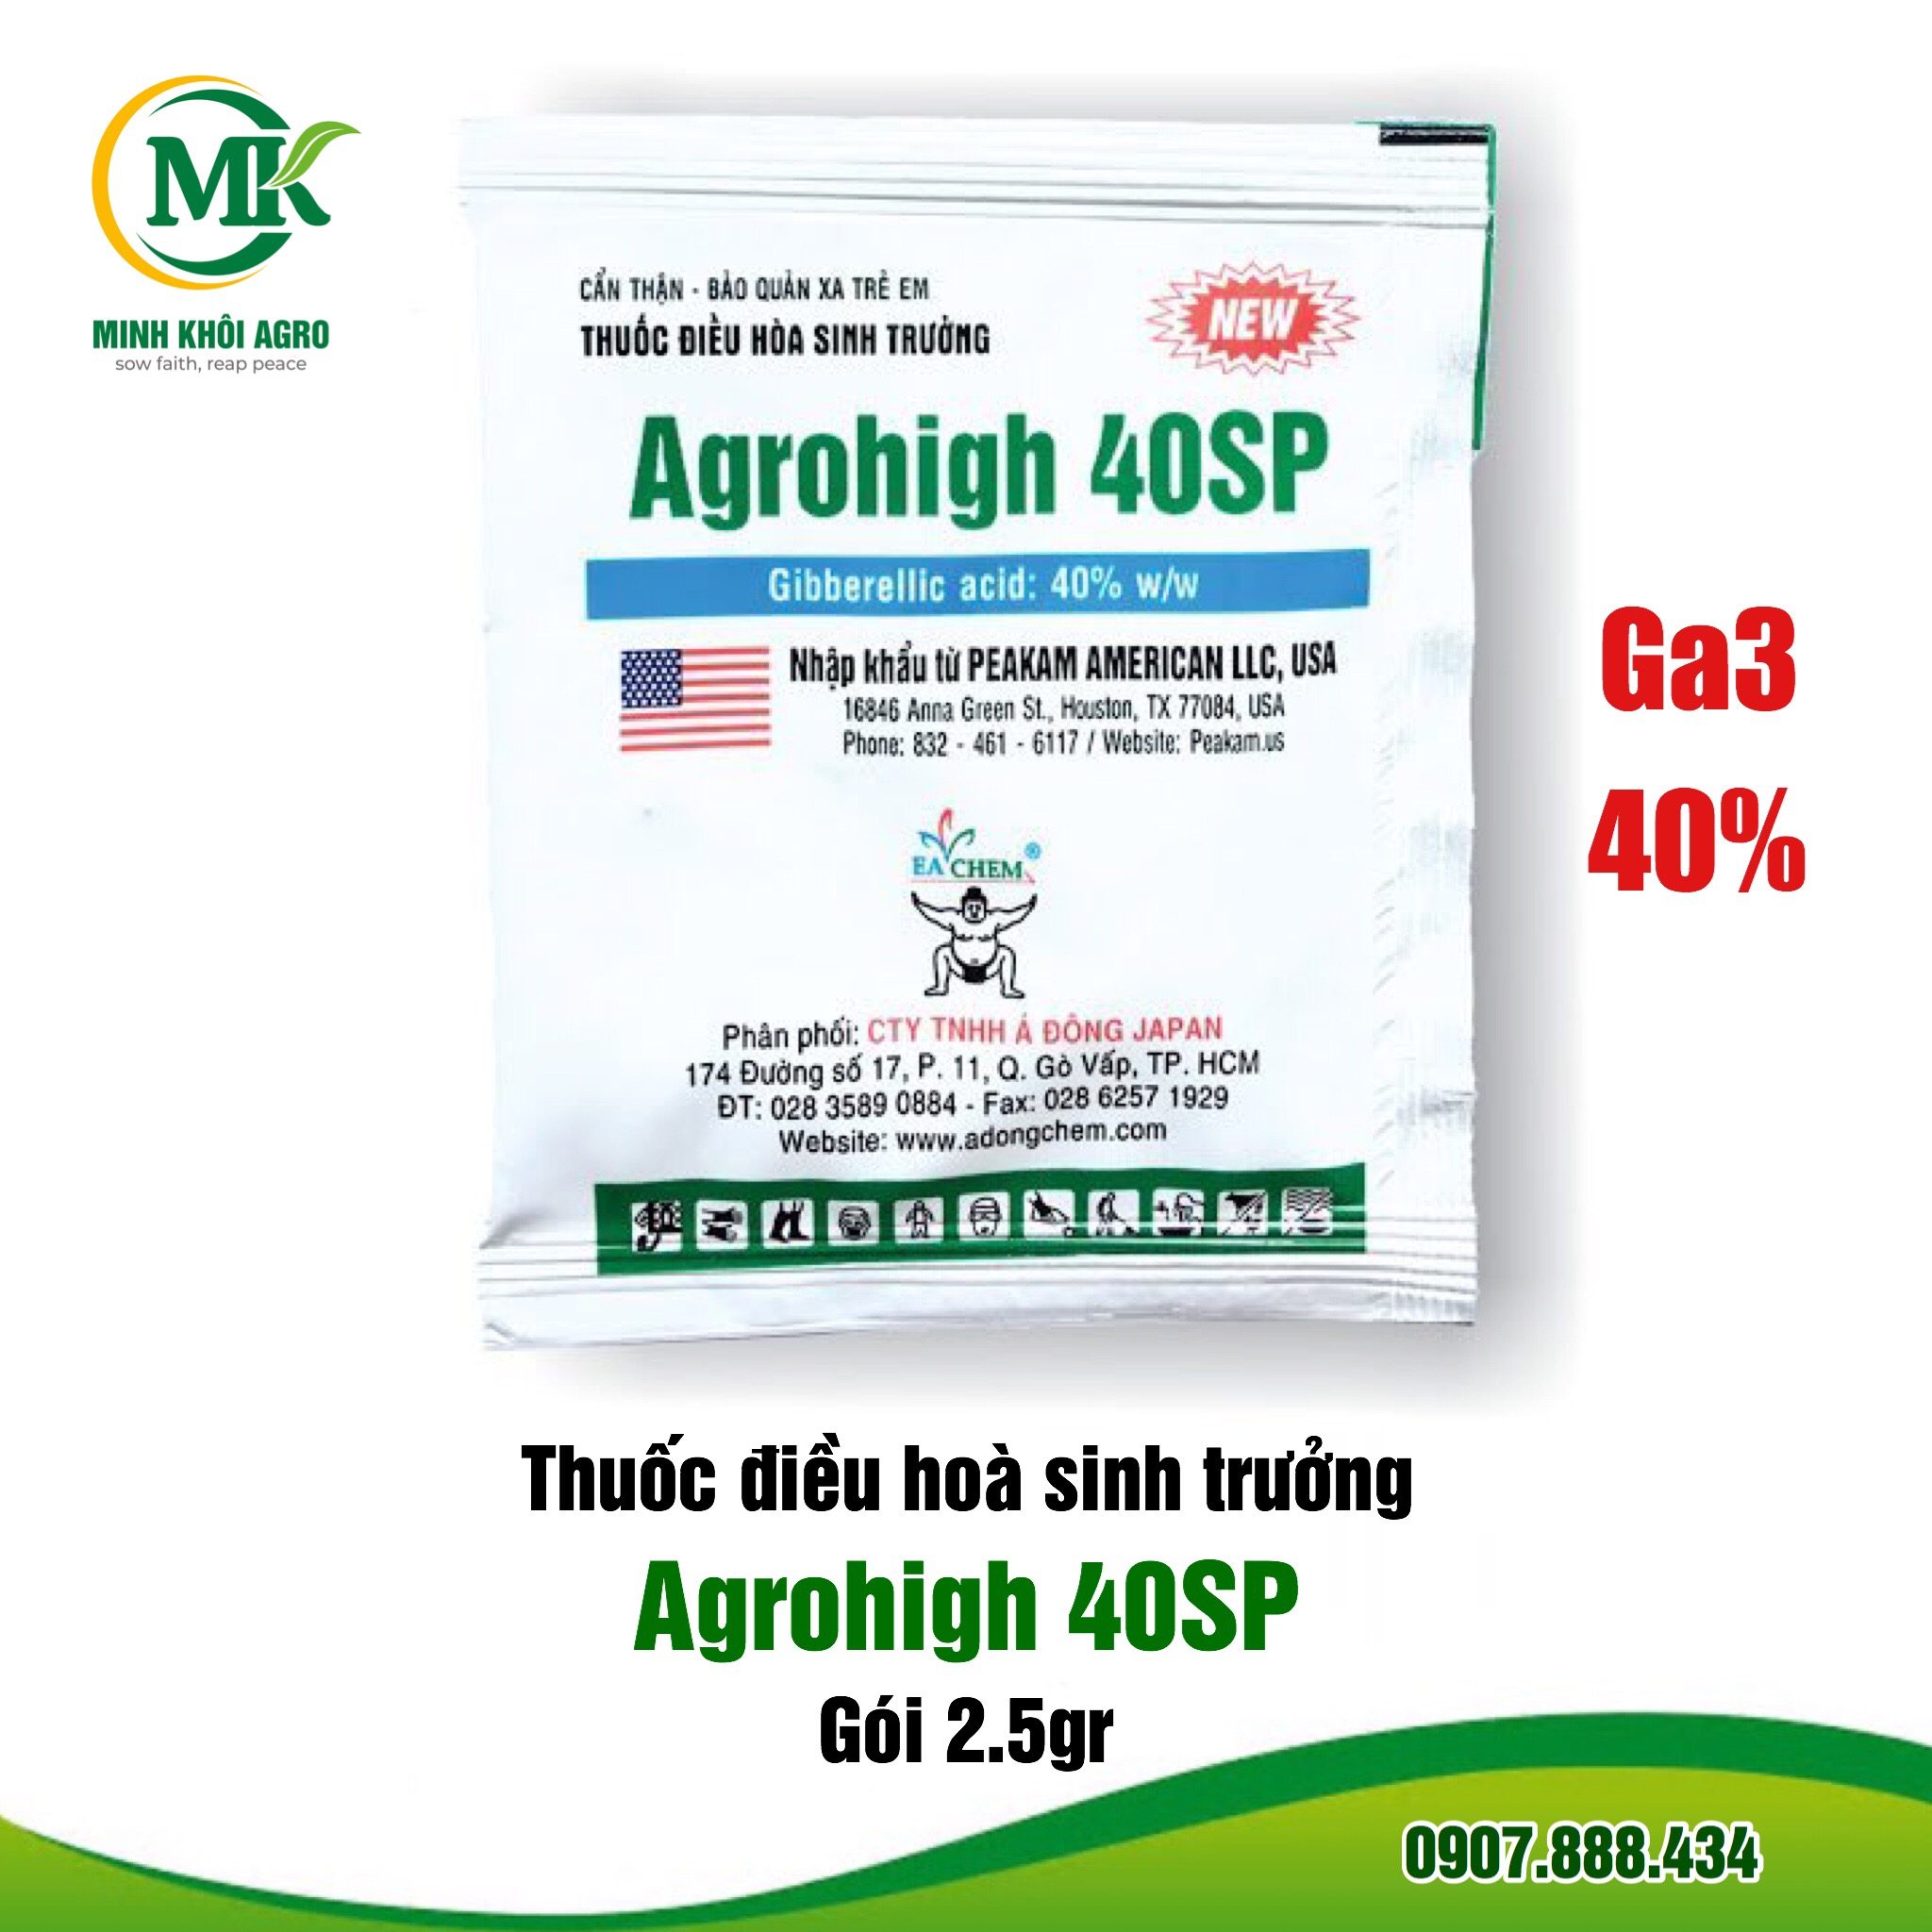 Thuốc điều hòa sinh trưởng Agrohigh 40SP - Gói 2.5g (Ga3 cốm USA)